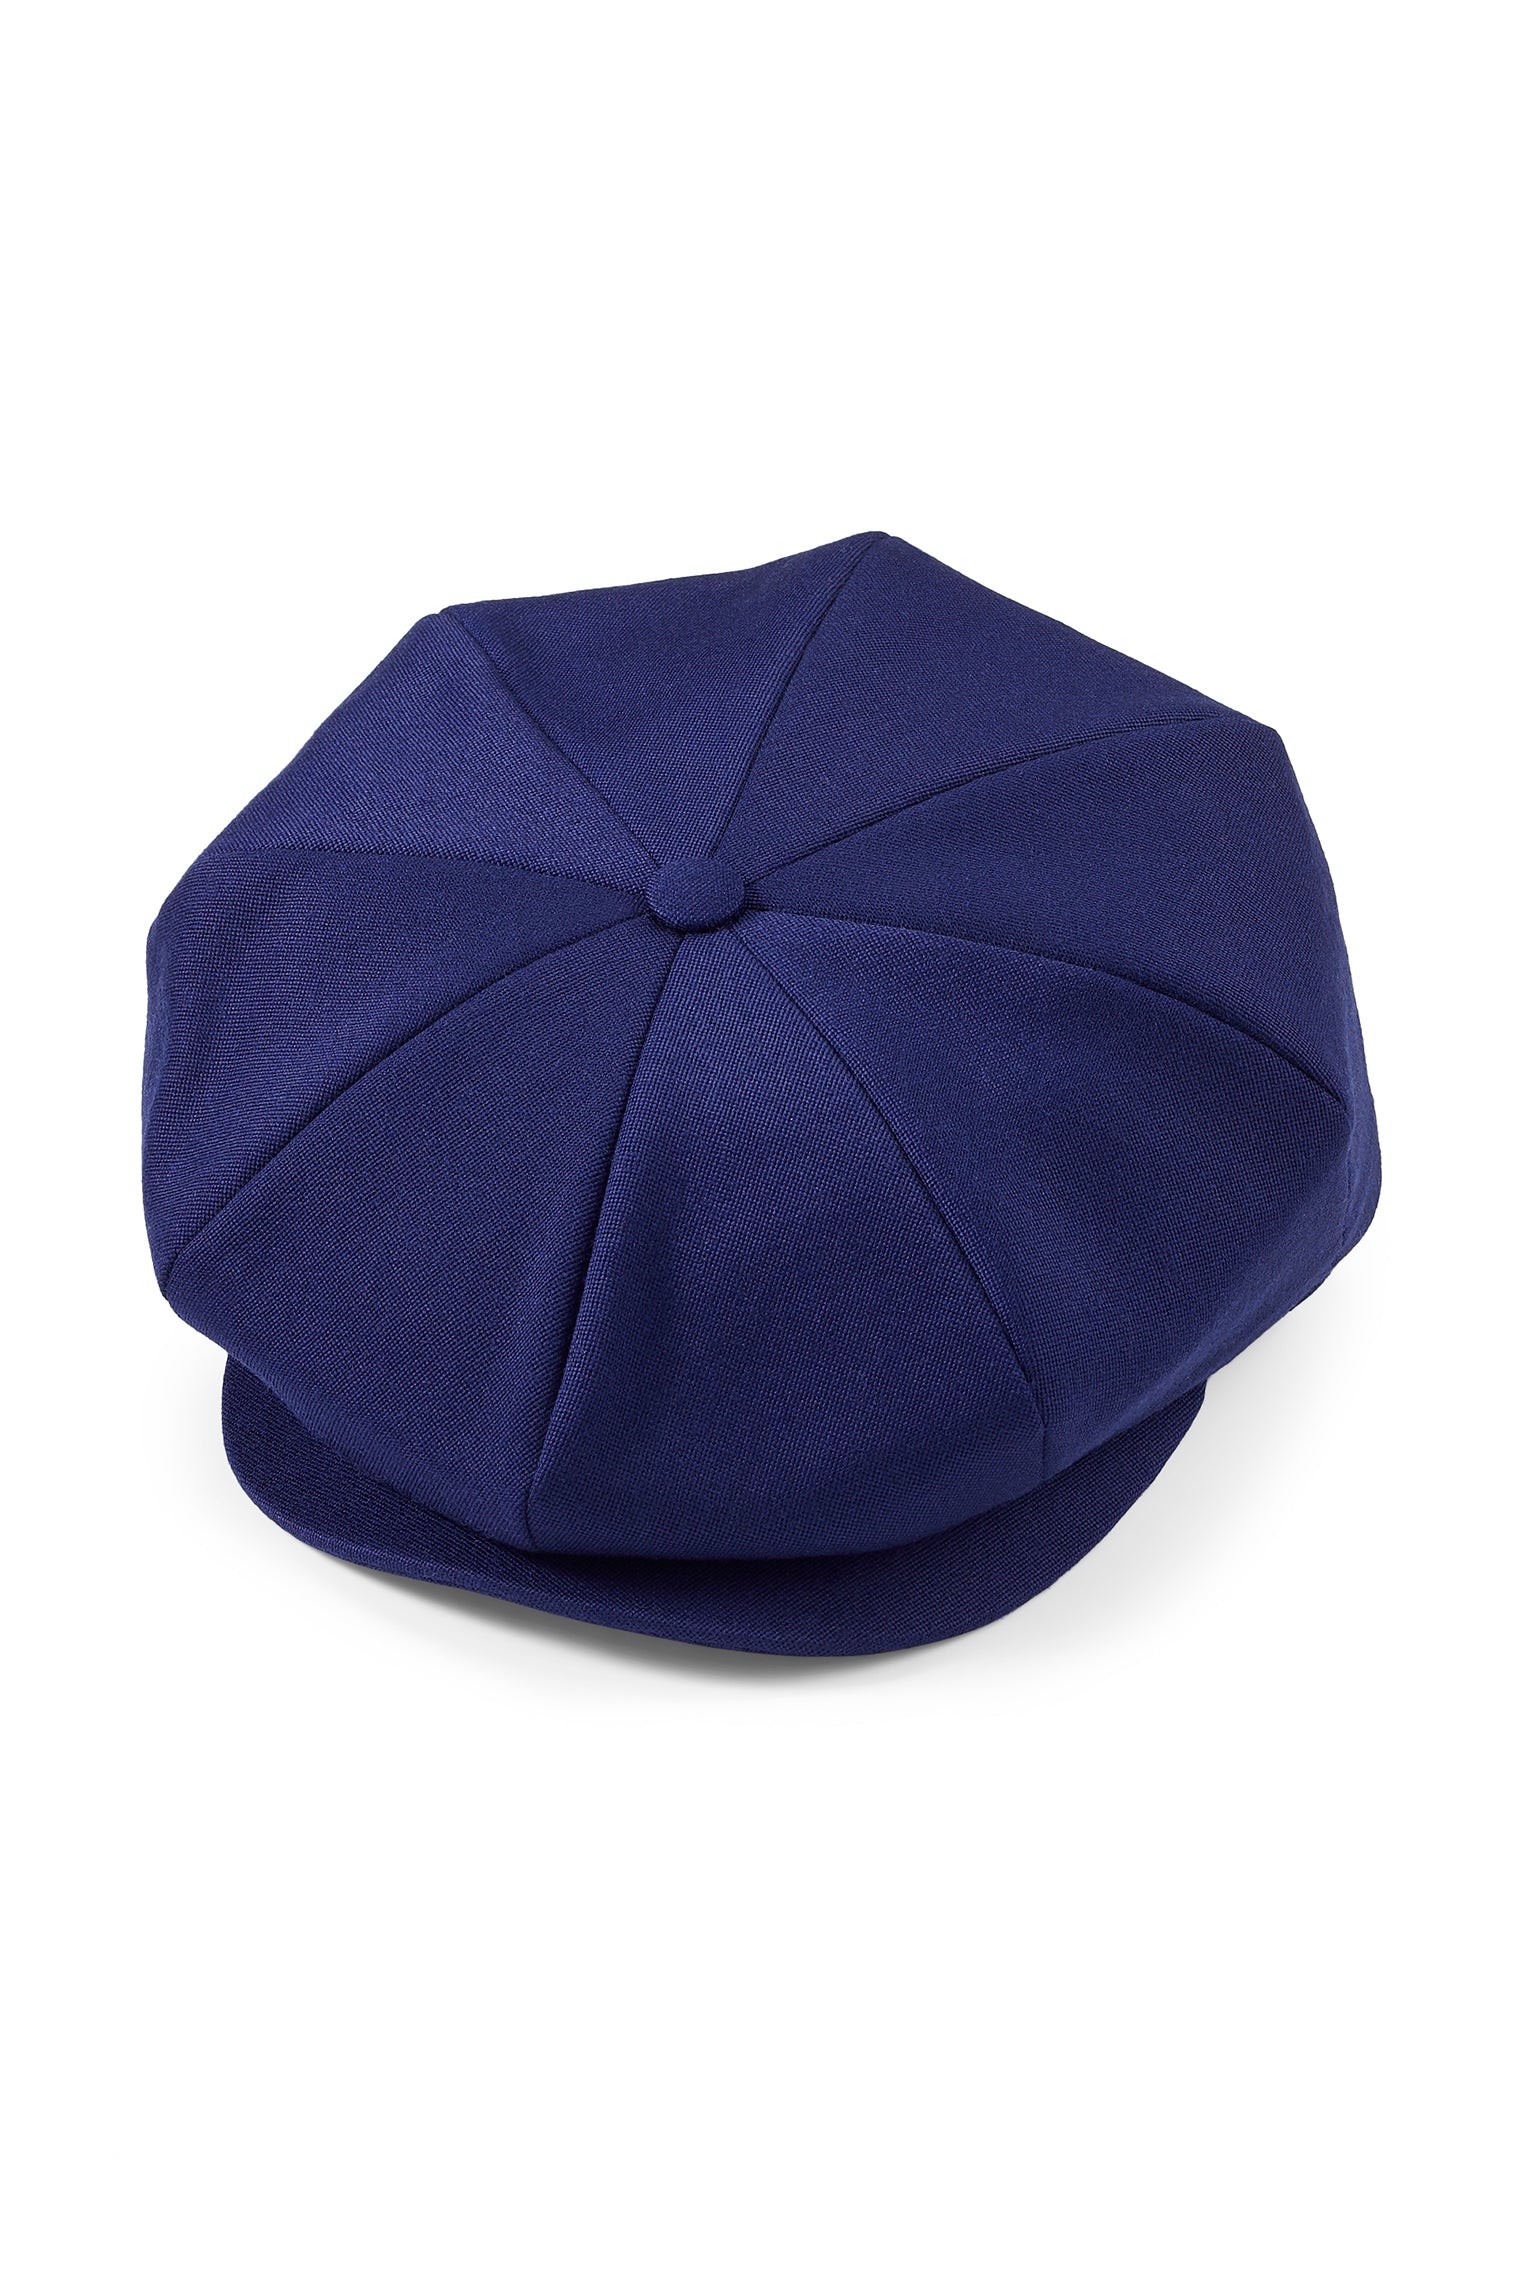 Tremelo Dark Blue Bakerboy Cap - Best Selling Hats - Lock & Co. Hatters London UK